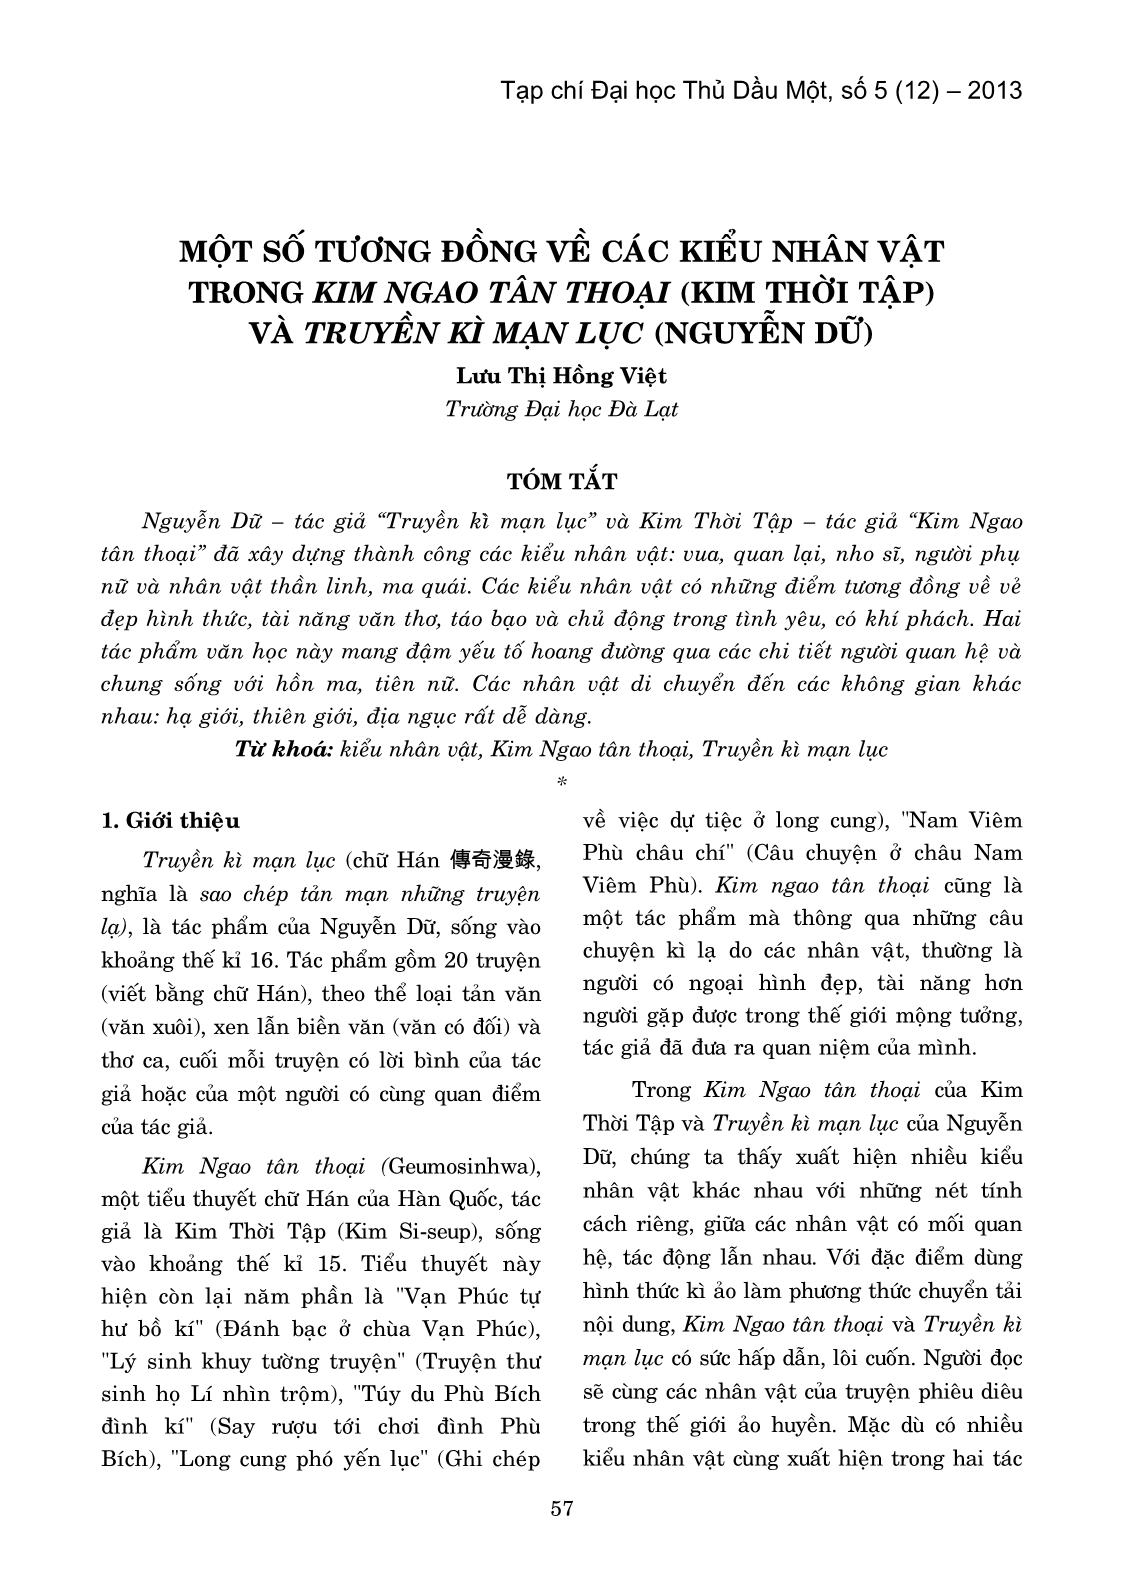 Một số tương đồng về các kiểu nhân vật trong Kim Ngao Tân Thoại (Kim Thời tập) và Truyền Kì Mạn Lục (Nguyễn Dữ) trang 1